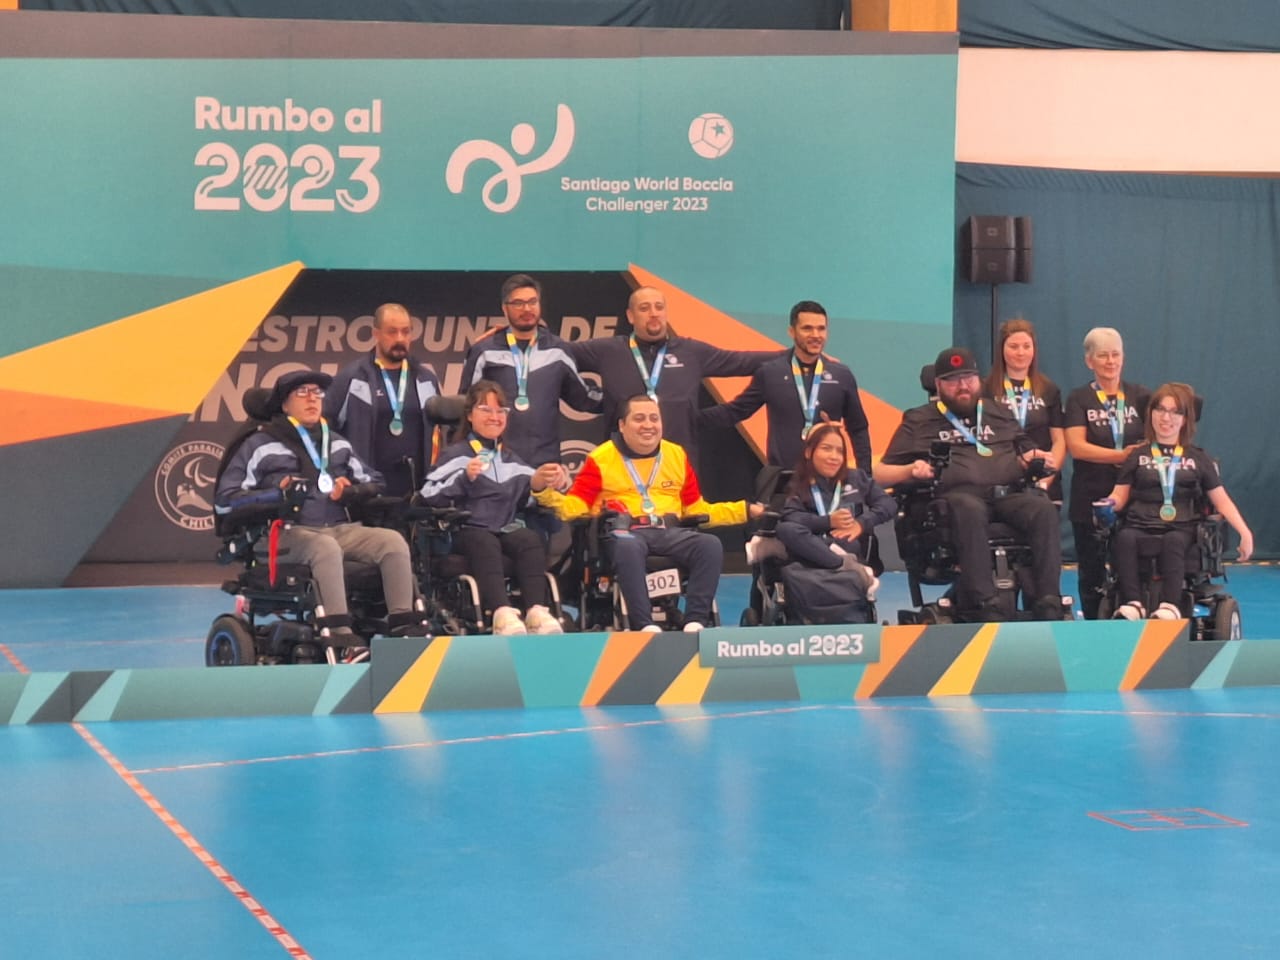 El equipo argentino de boccia luego de la premiación en el Challenger de Santiago